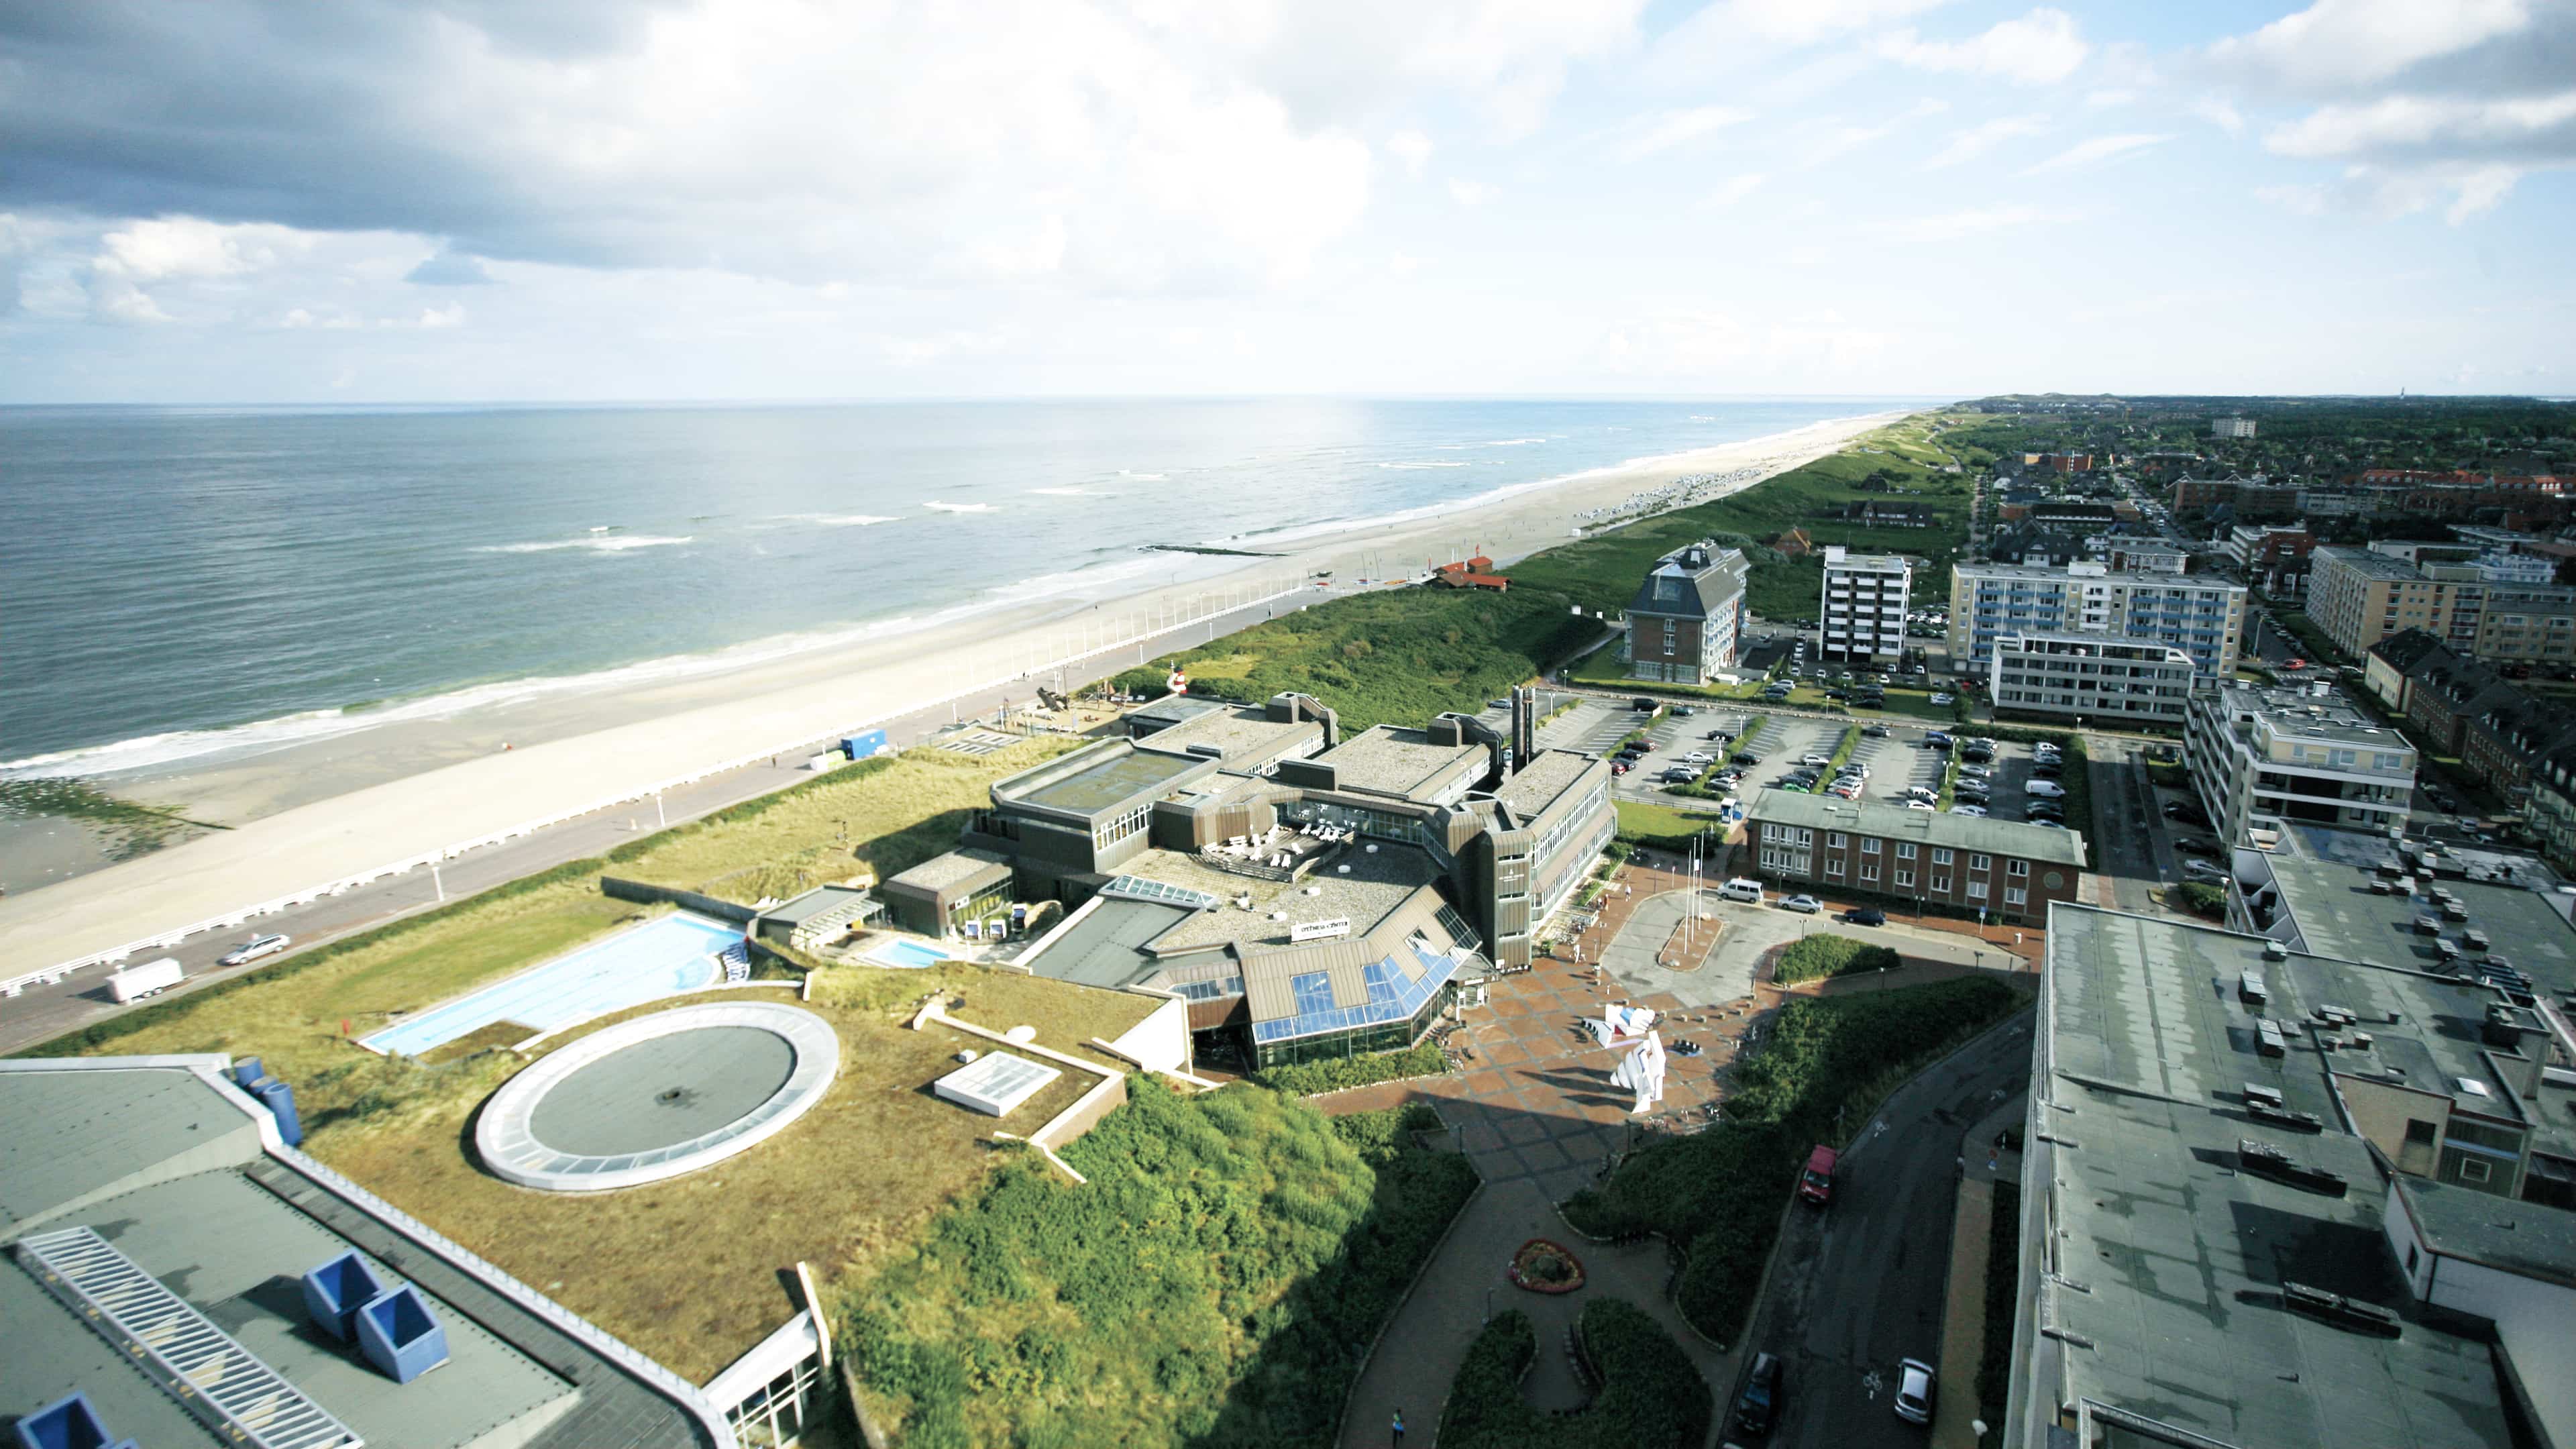 Luftbild vom Syltness Center mit anliegendem Strand